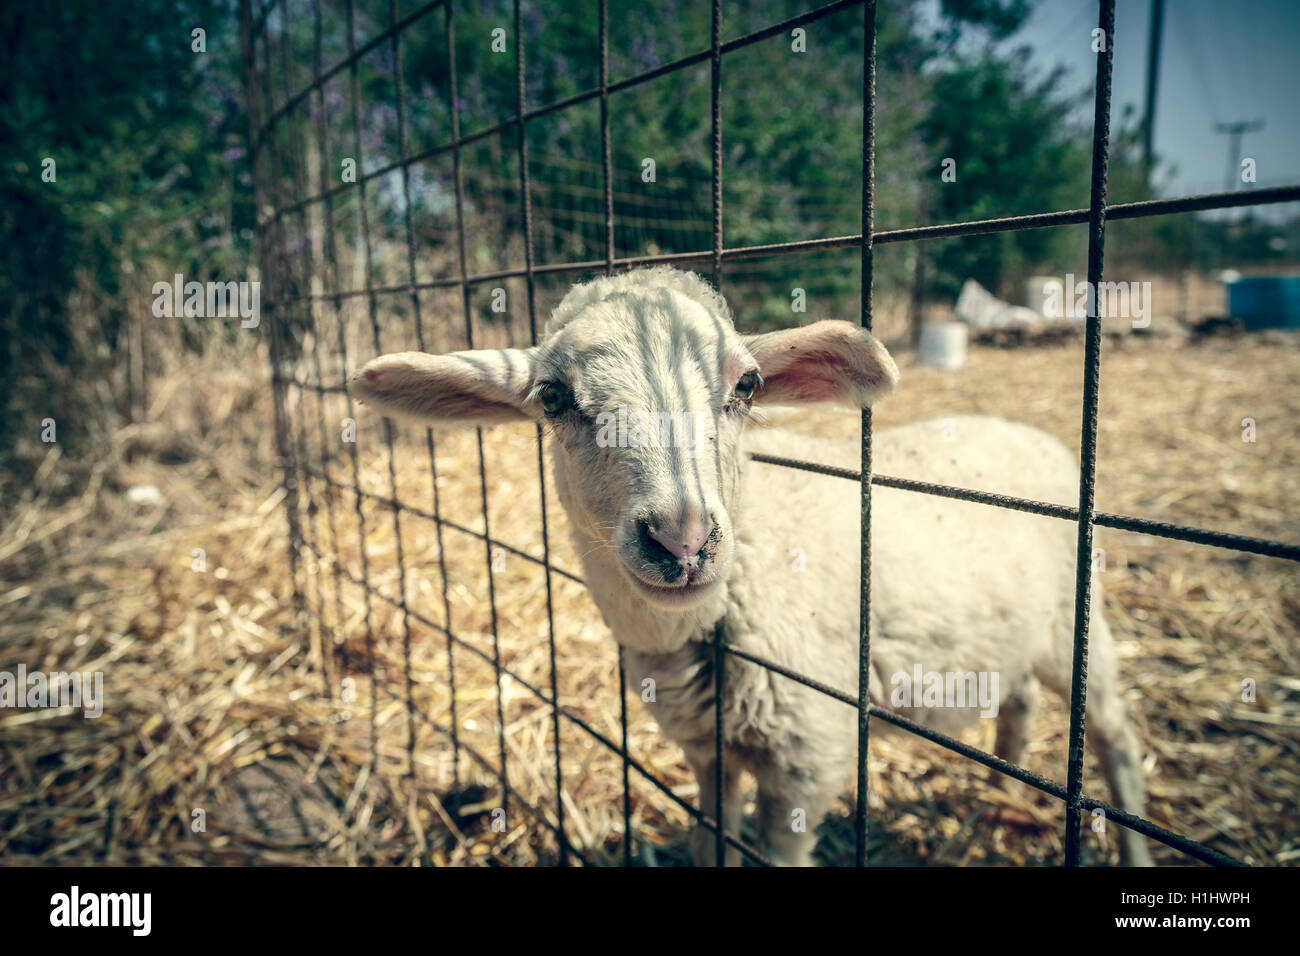 Carino agnello guardando attraverso una recinzione metallica Foto Stock